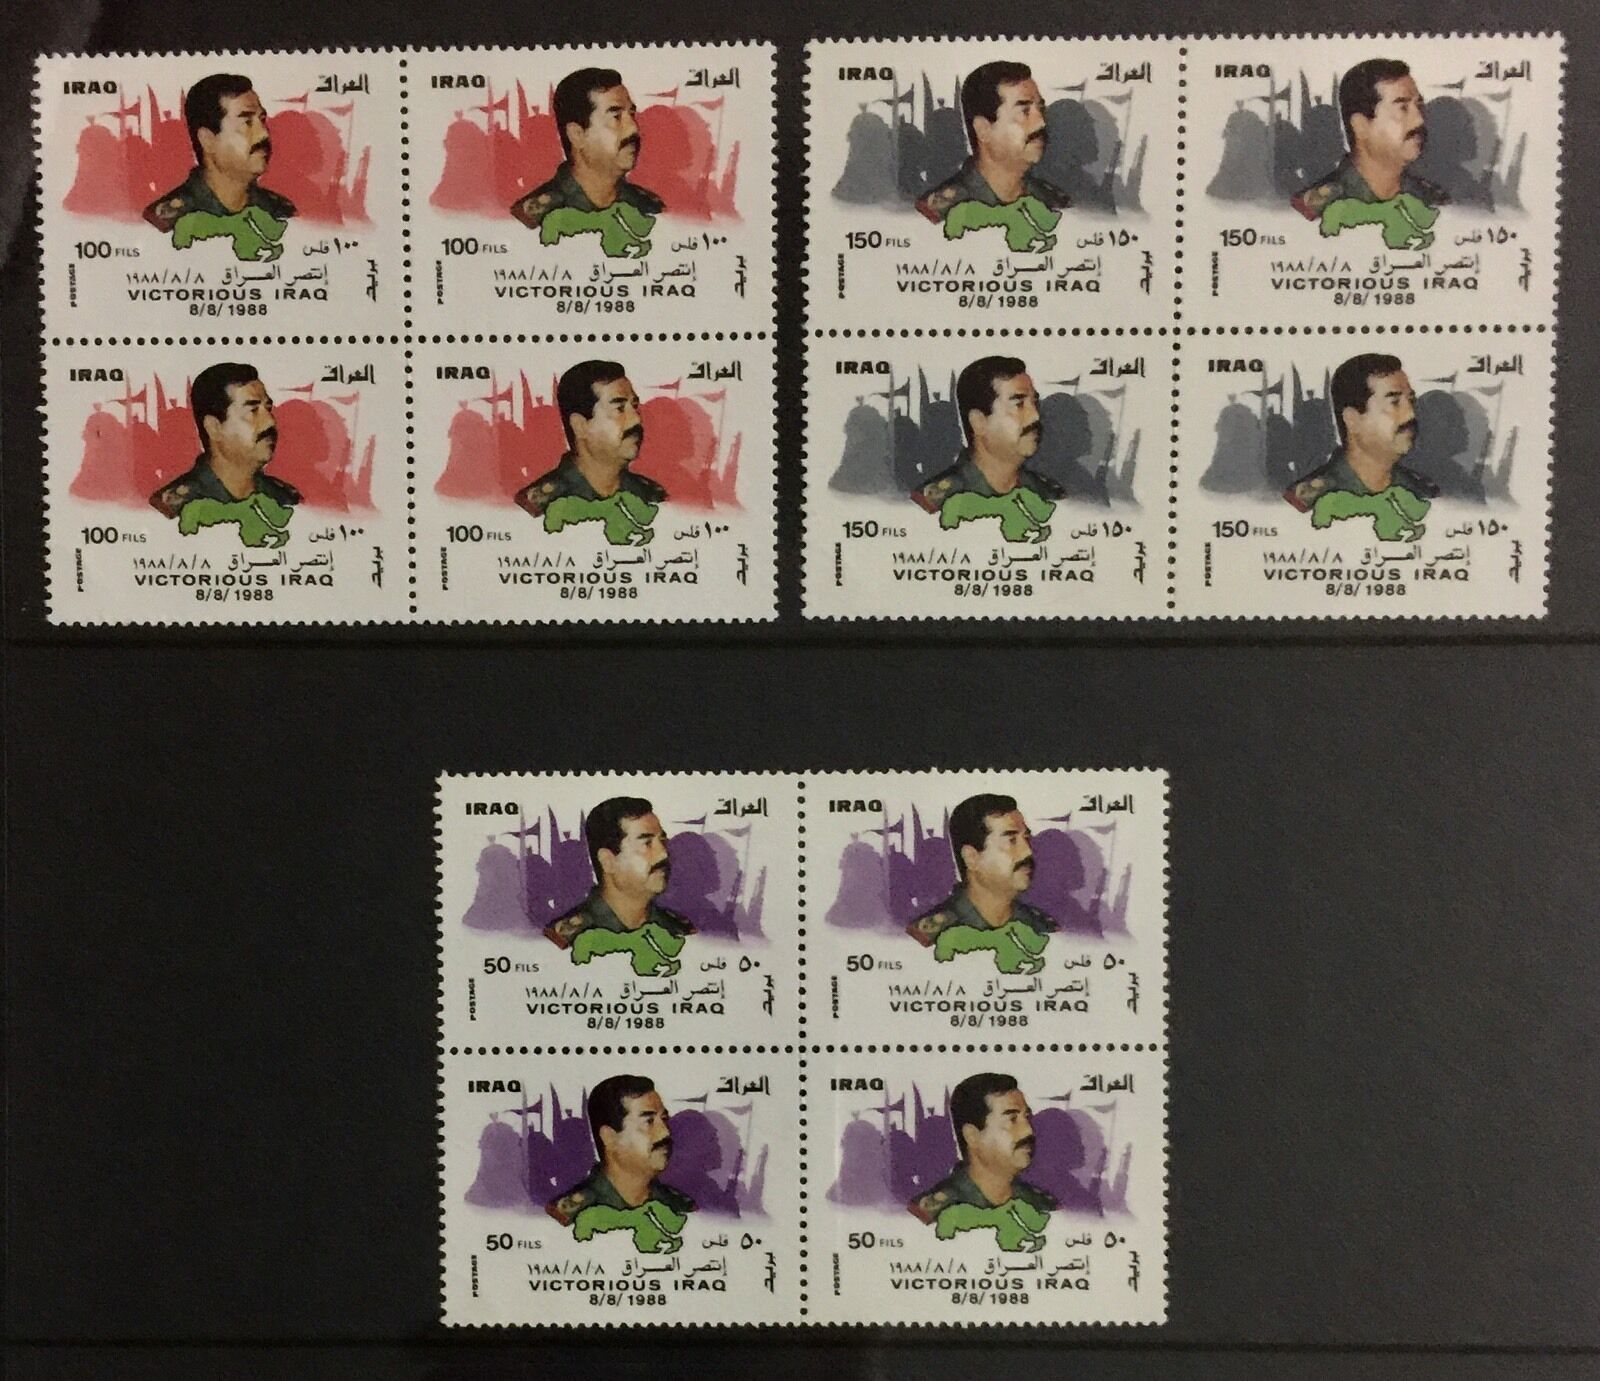 Iraq Stamps-8/8/1988-Victories Iraq-Saddam Hussain-Complete MNH BLK of 4s Binnenlands super welkom